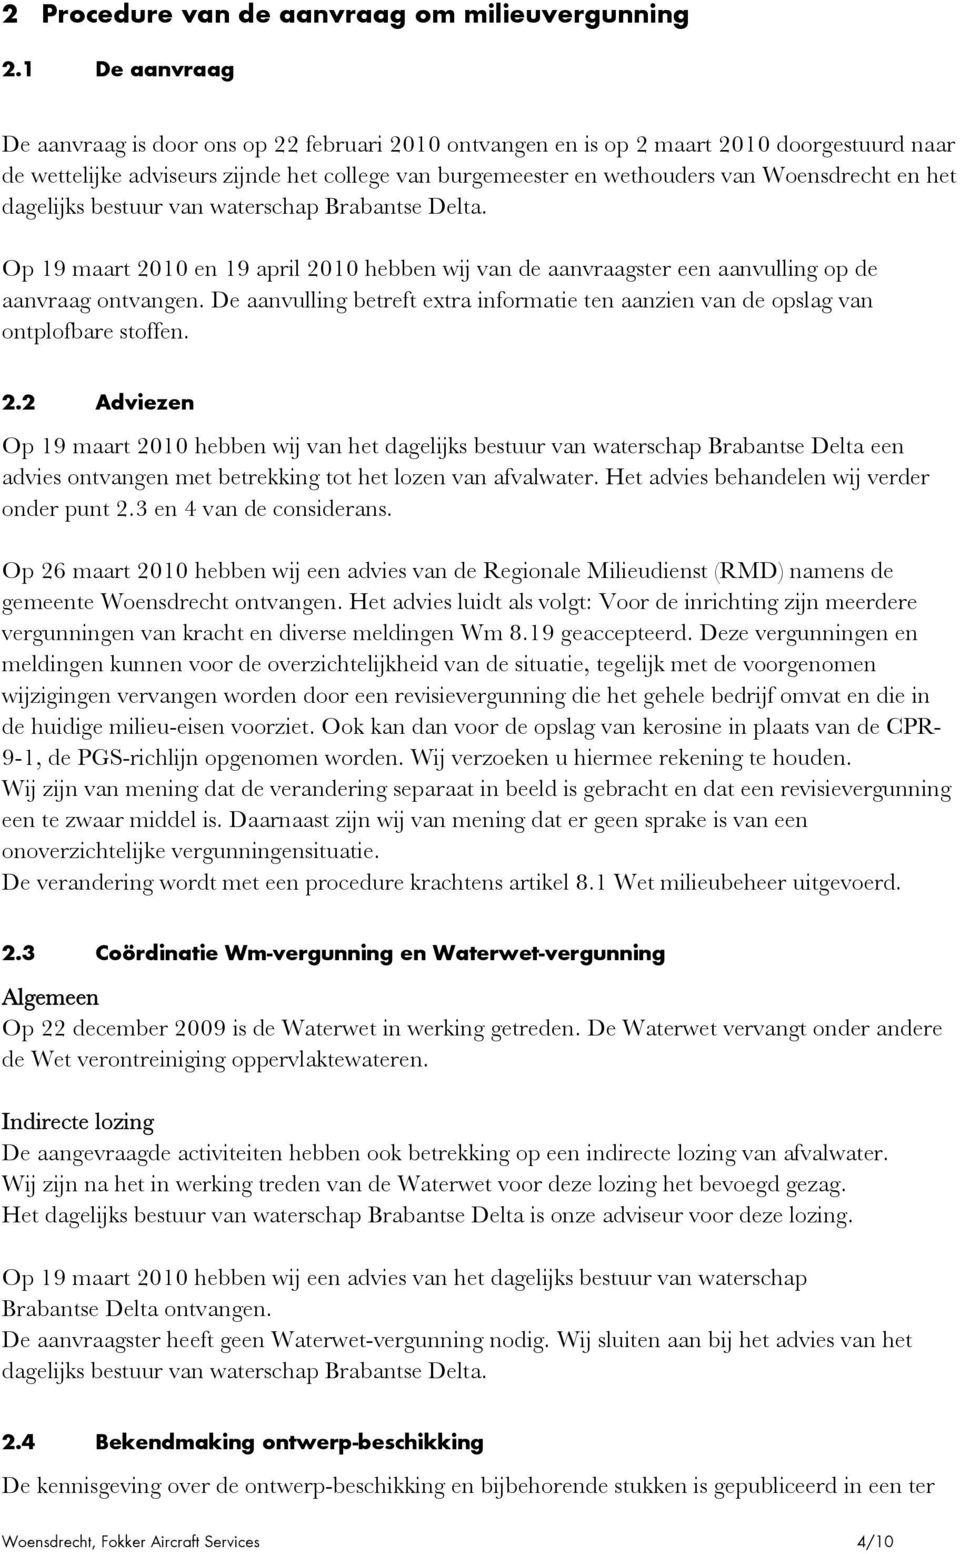 en het dagelijks bestuur van waterschap Brabantse Delta. Op 19 maart 2010 en 19 april 2010 hebben wij van de aanvraagster een aanvulling op de aanvraag ontvangen.